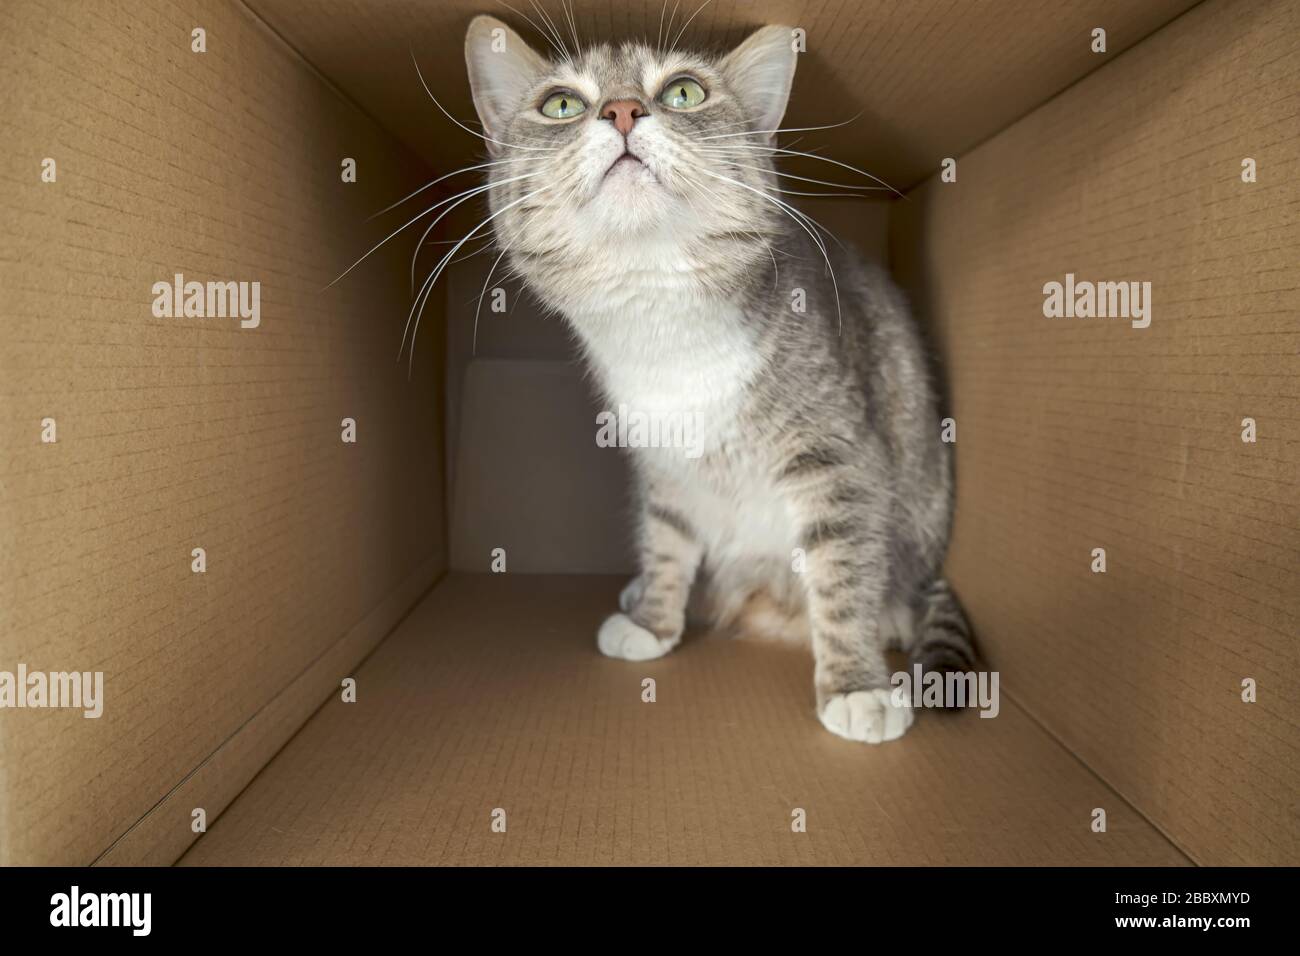 Le chat mignon et prudent est placé dans une grande boîte en carton et ressemble avec curiosité et intérêt. Banque D'Images